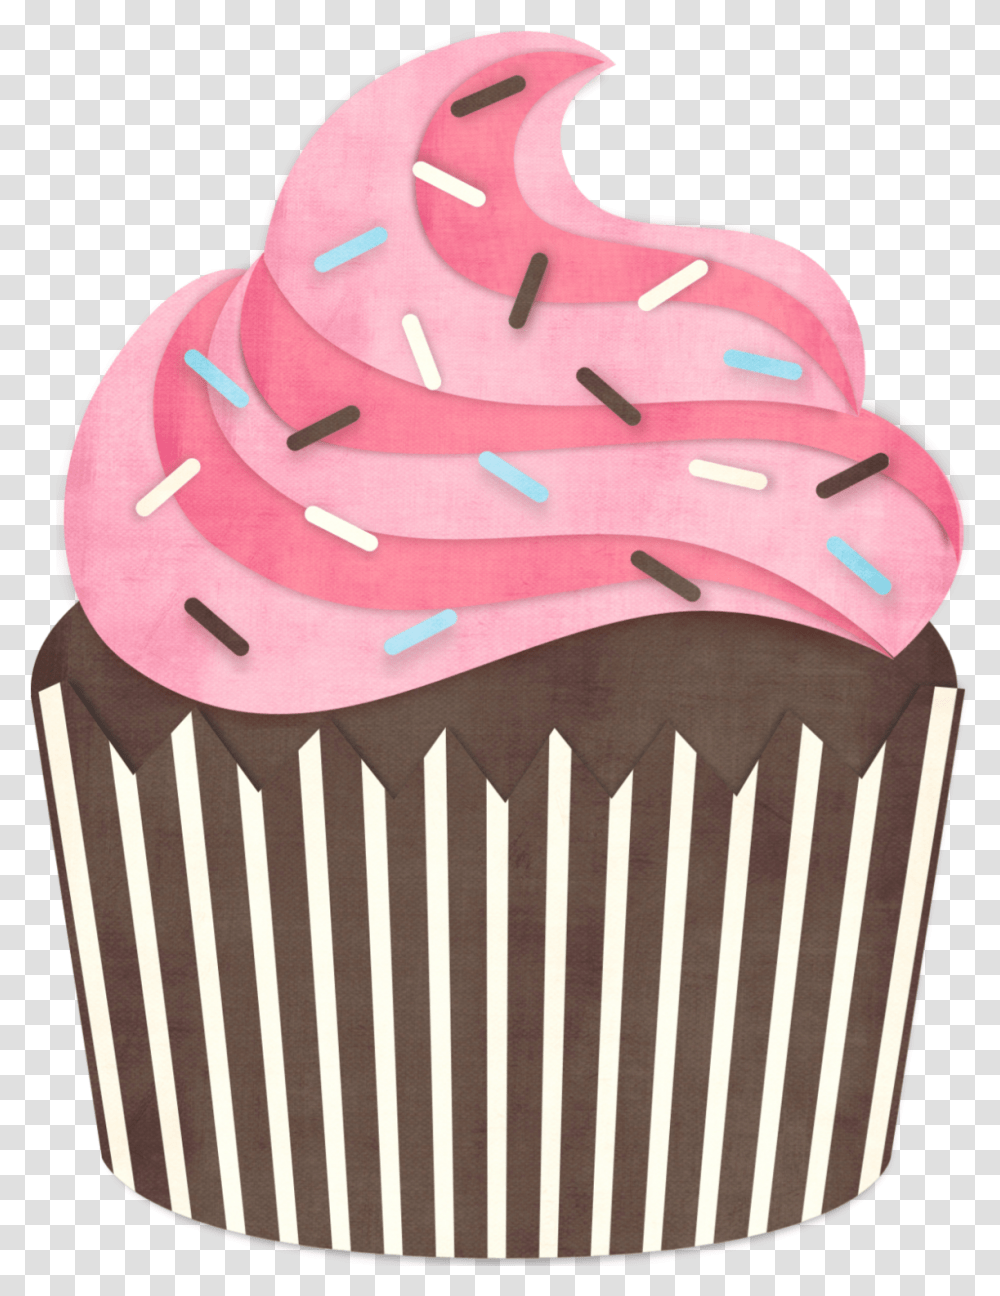 Lindos E Fofos Cupcakes Em Mini Cupcake, Cream, Dessert, Food, Creme Transparent Png